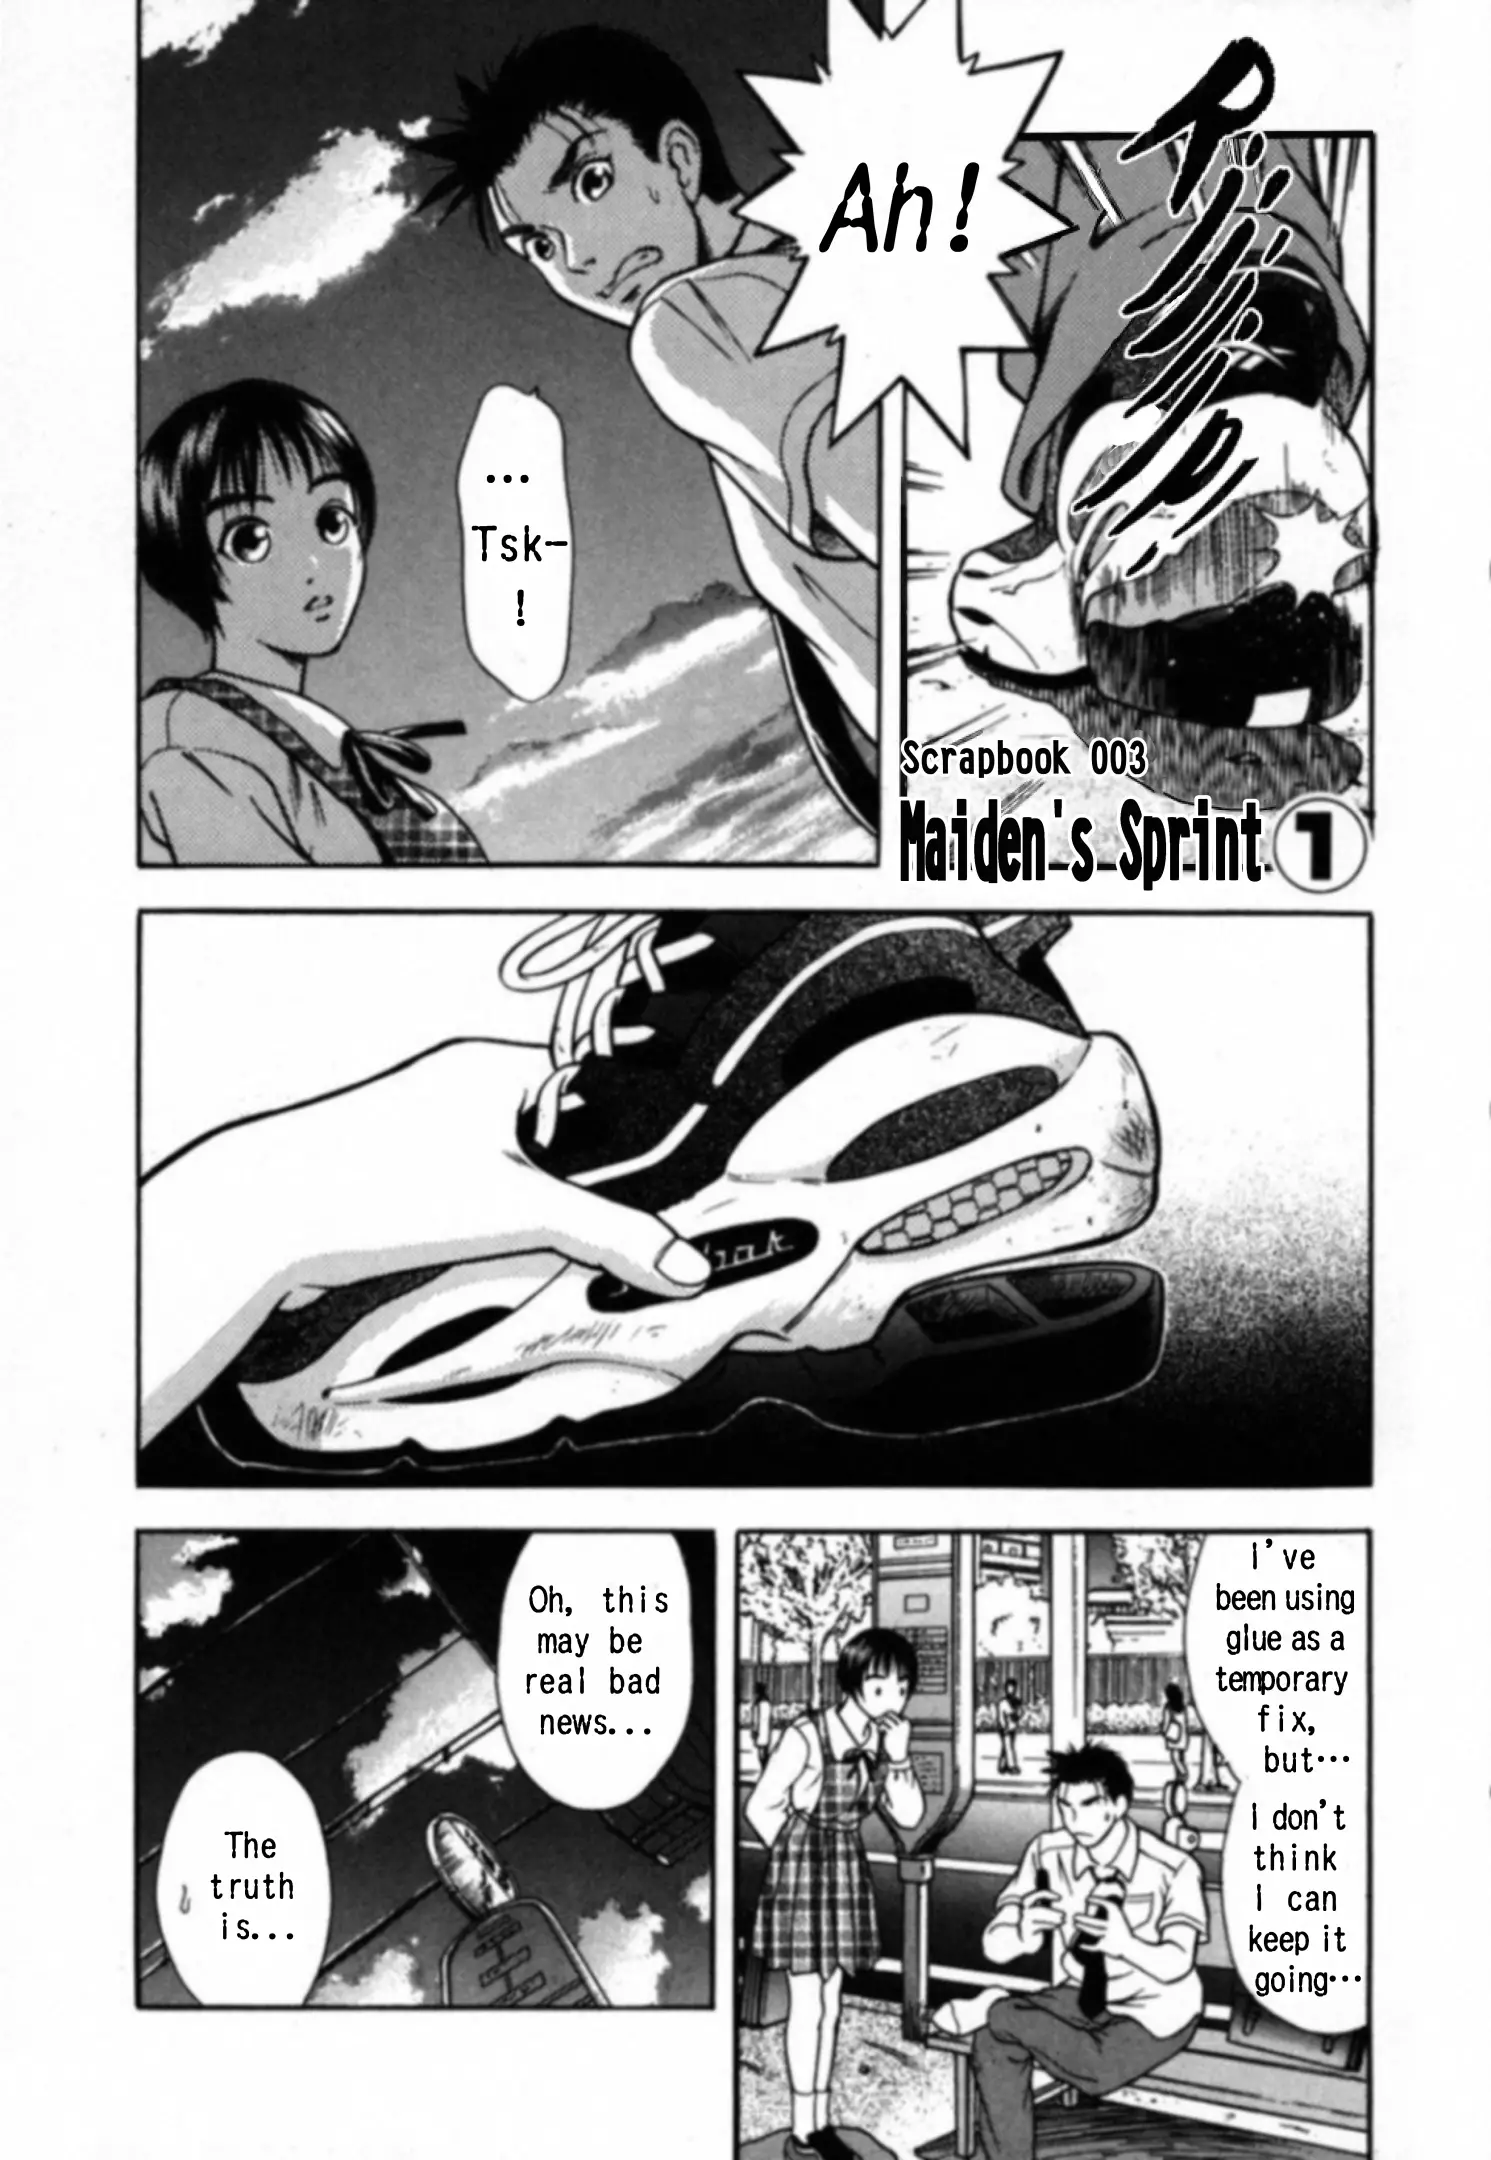 Kakeru - 23 page 1-3535db47